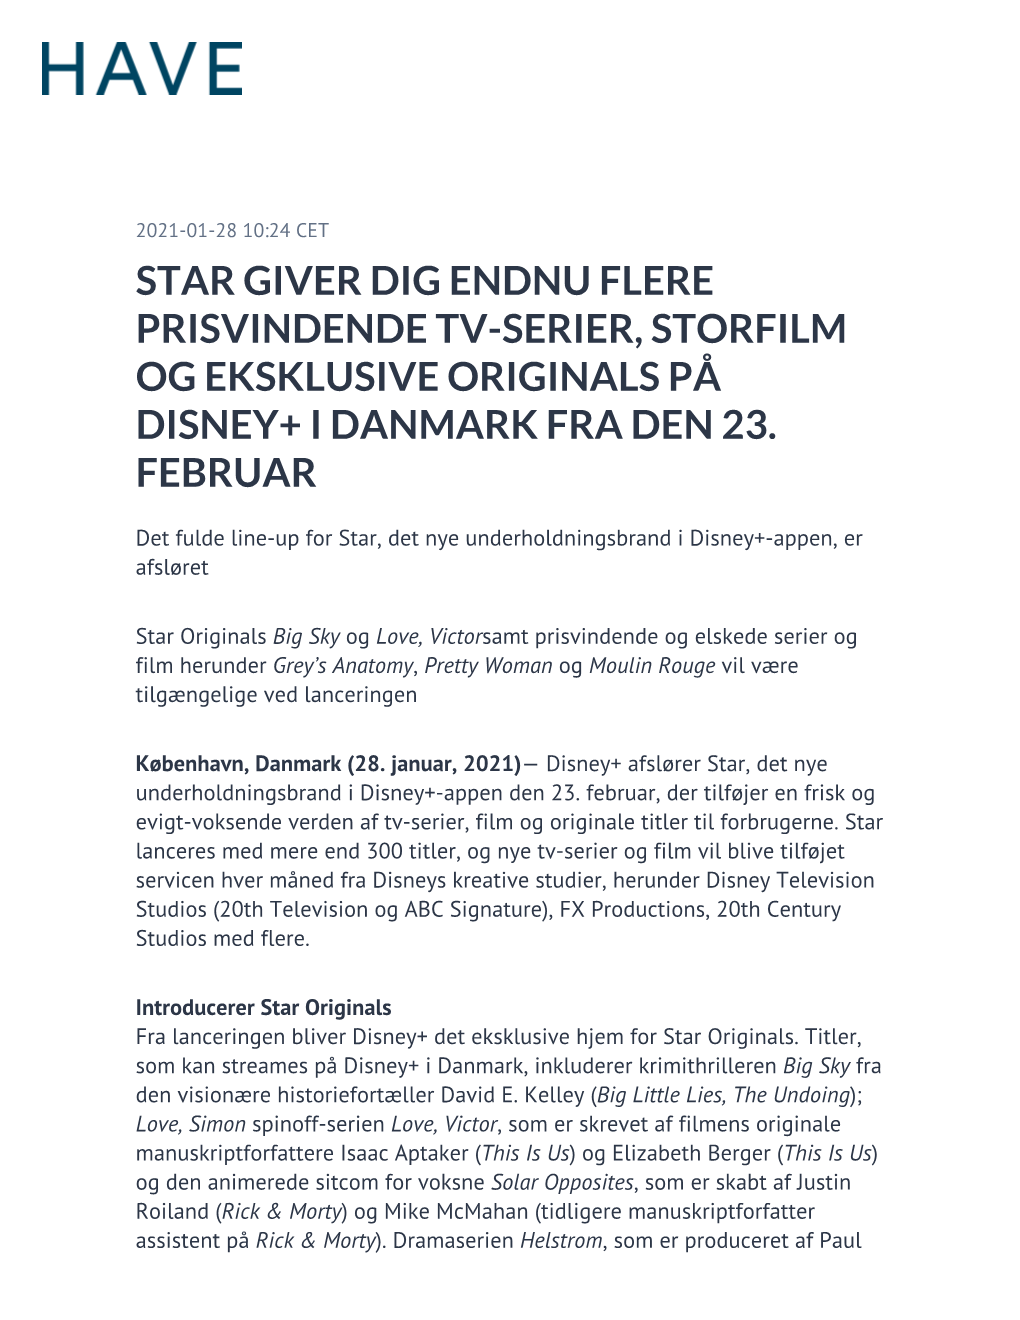 Star Giver Dig Endnu Flere Prisvindende Tv-Serier, Storfilm Og Eksklusive Originals På Disney+ I Danmark Fra Den 23